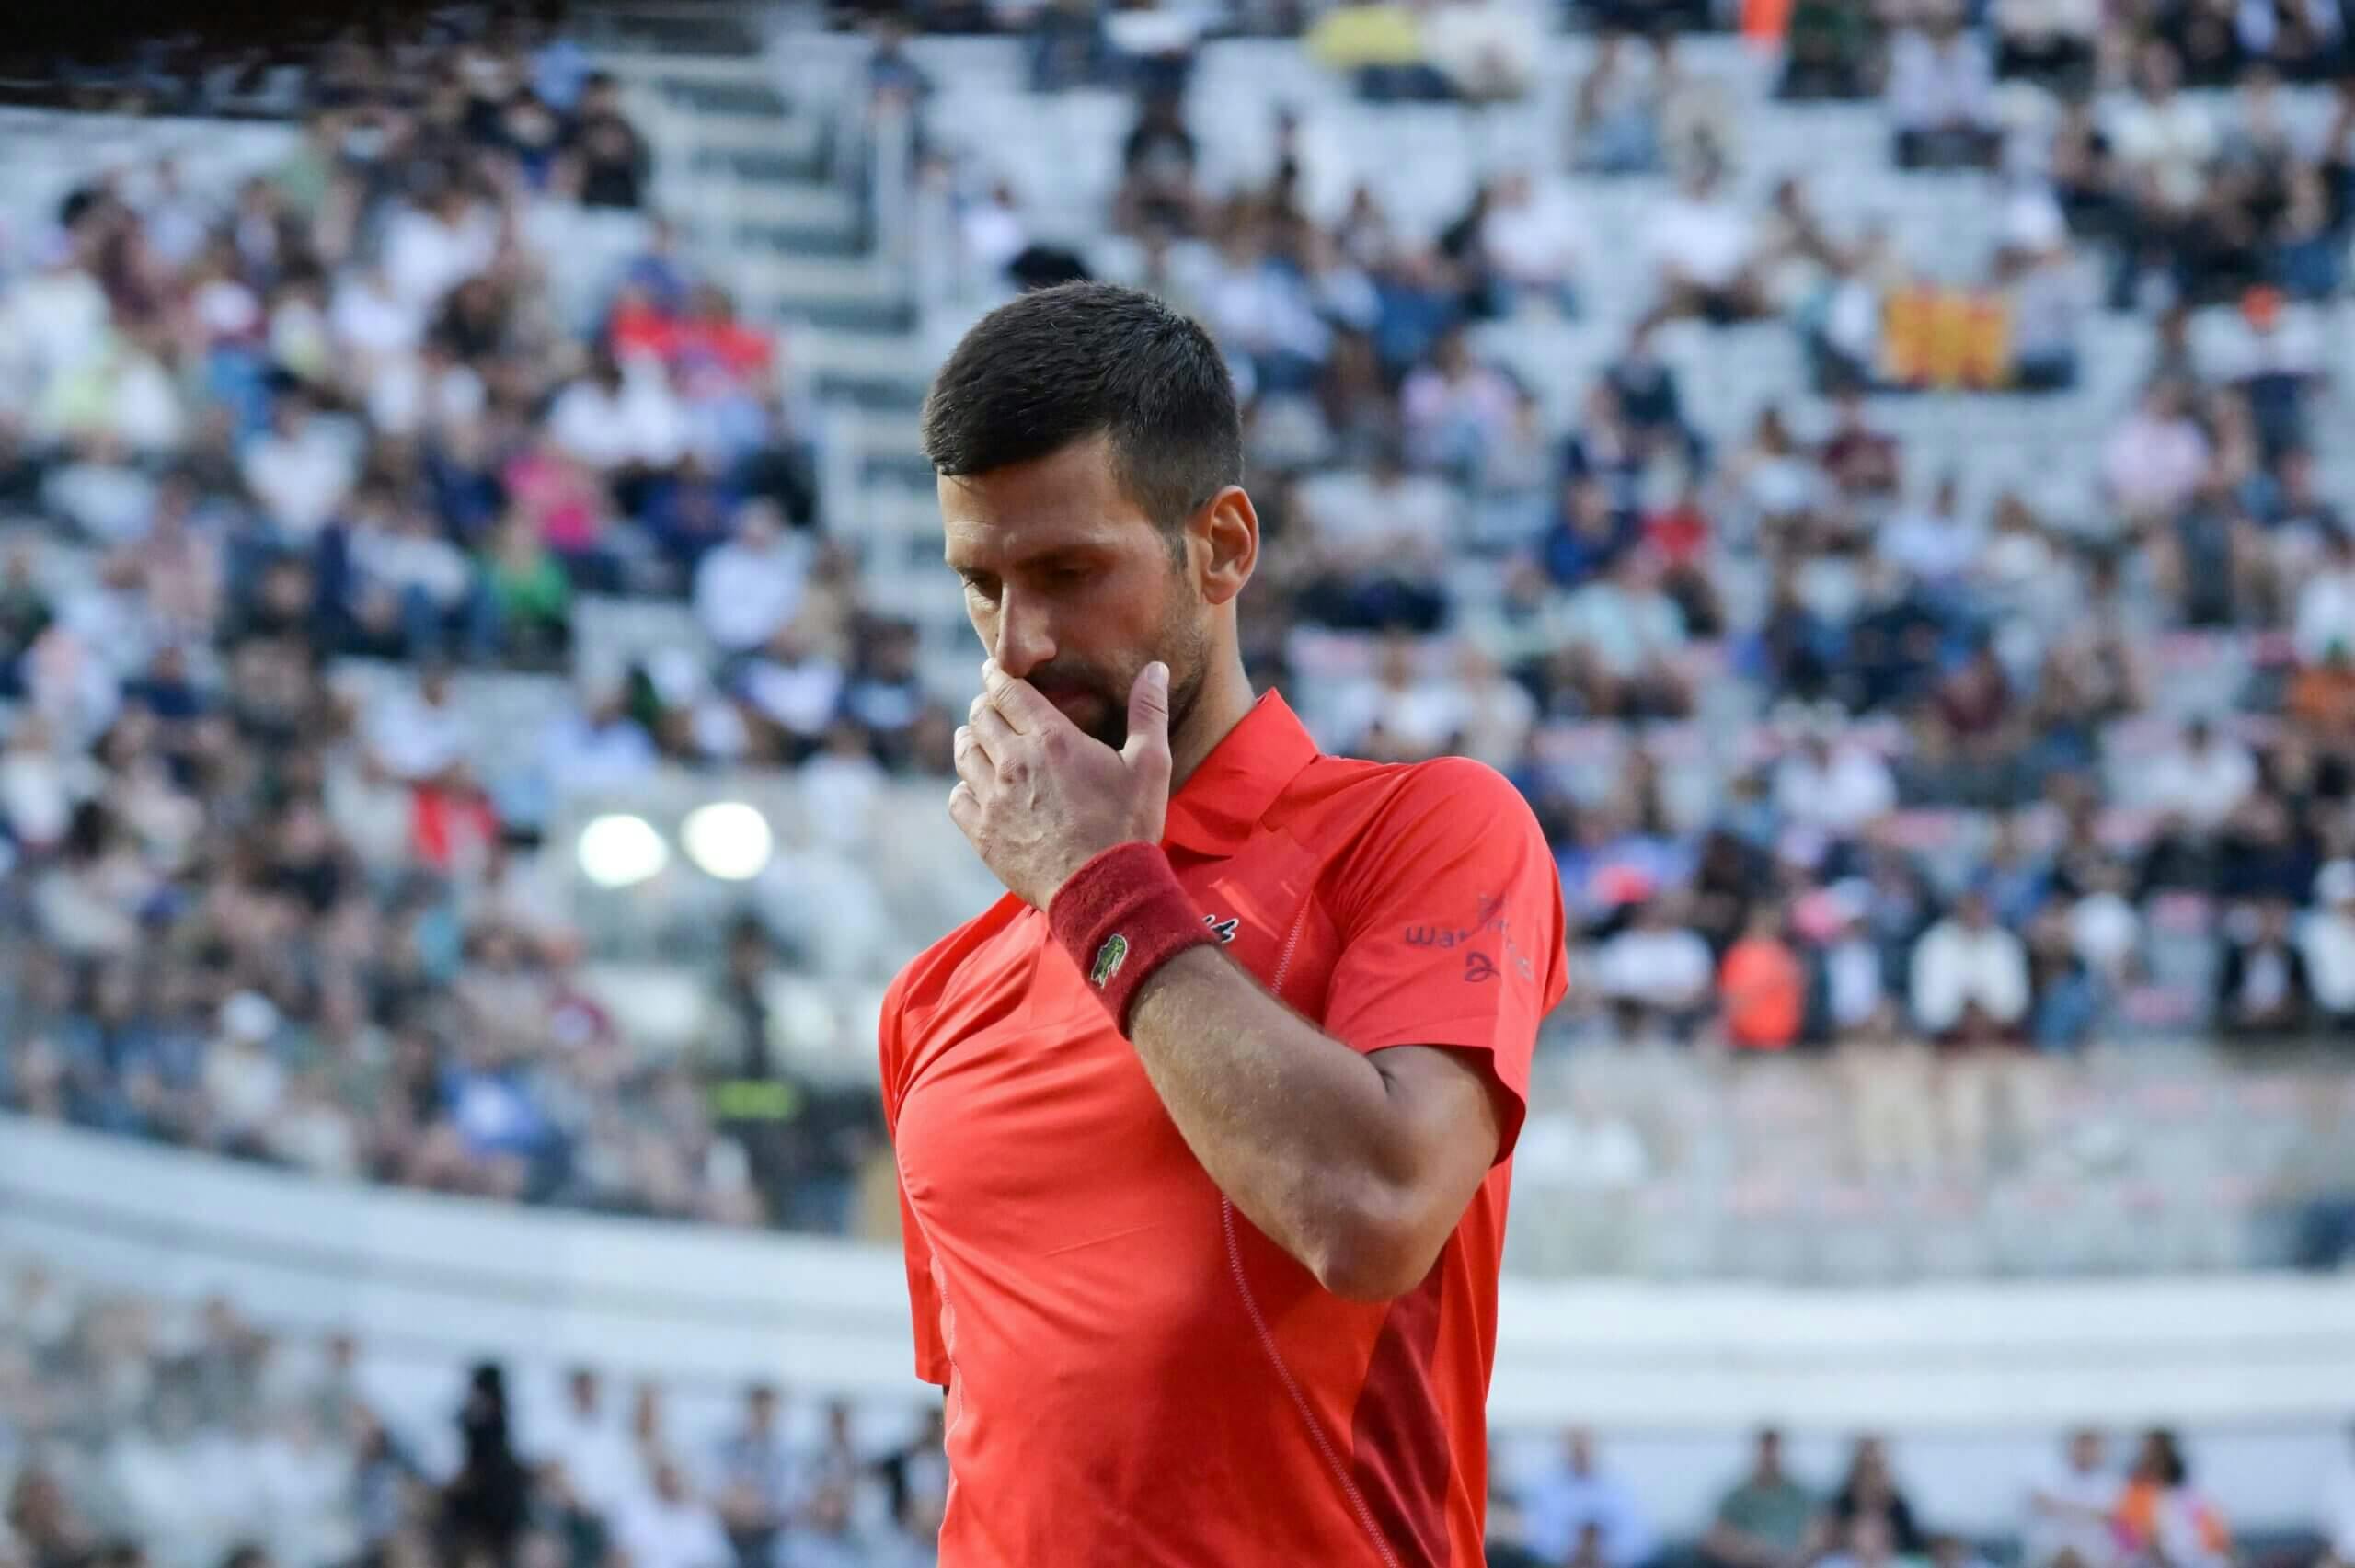 World No. 32 Tabilo Defeats No. 1 Djokovic 6-2, 6-3 at Italian Open